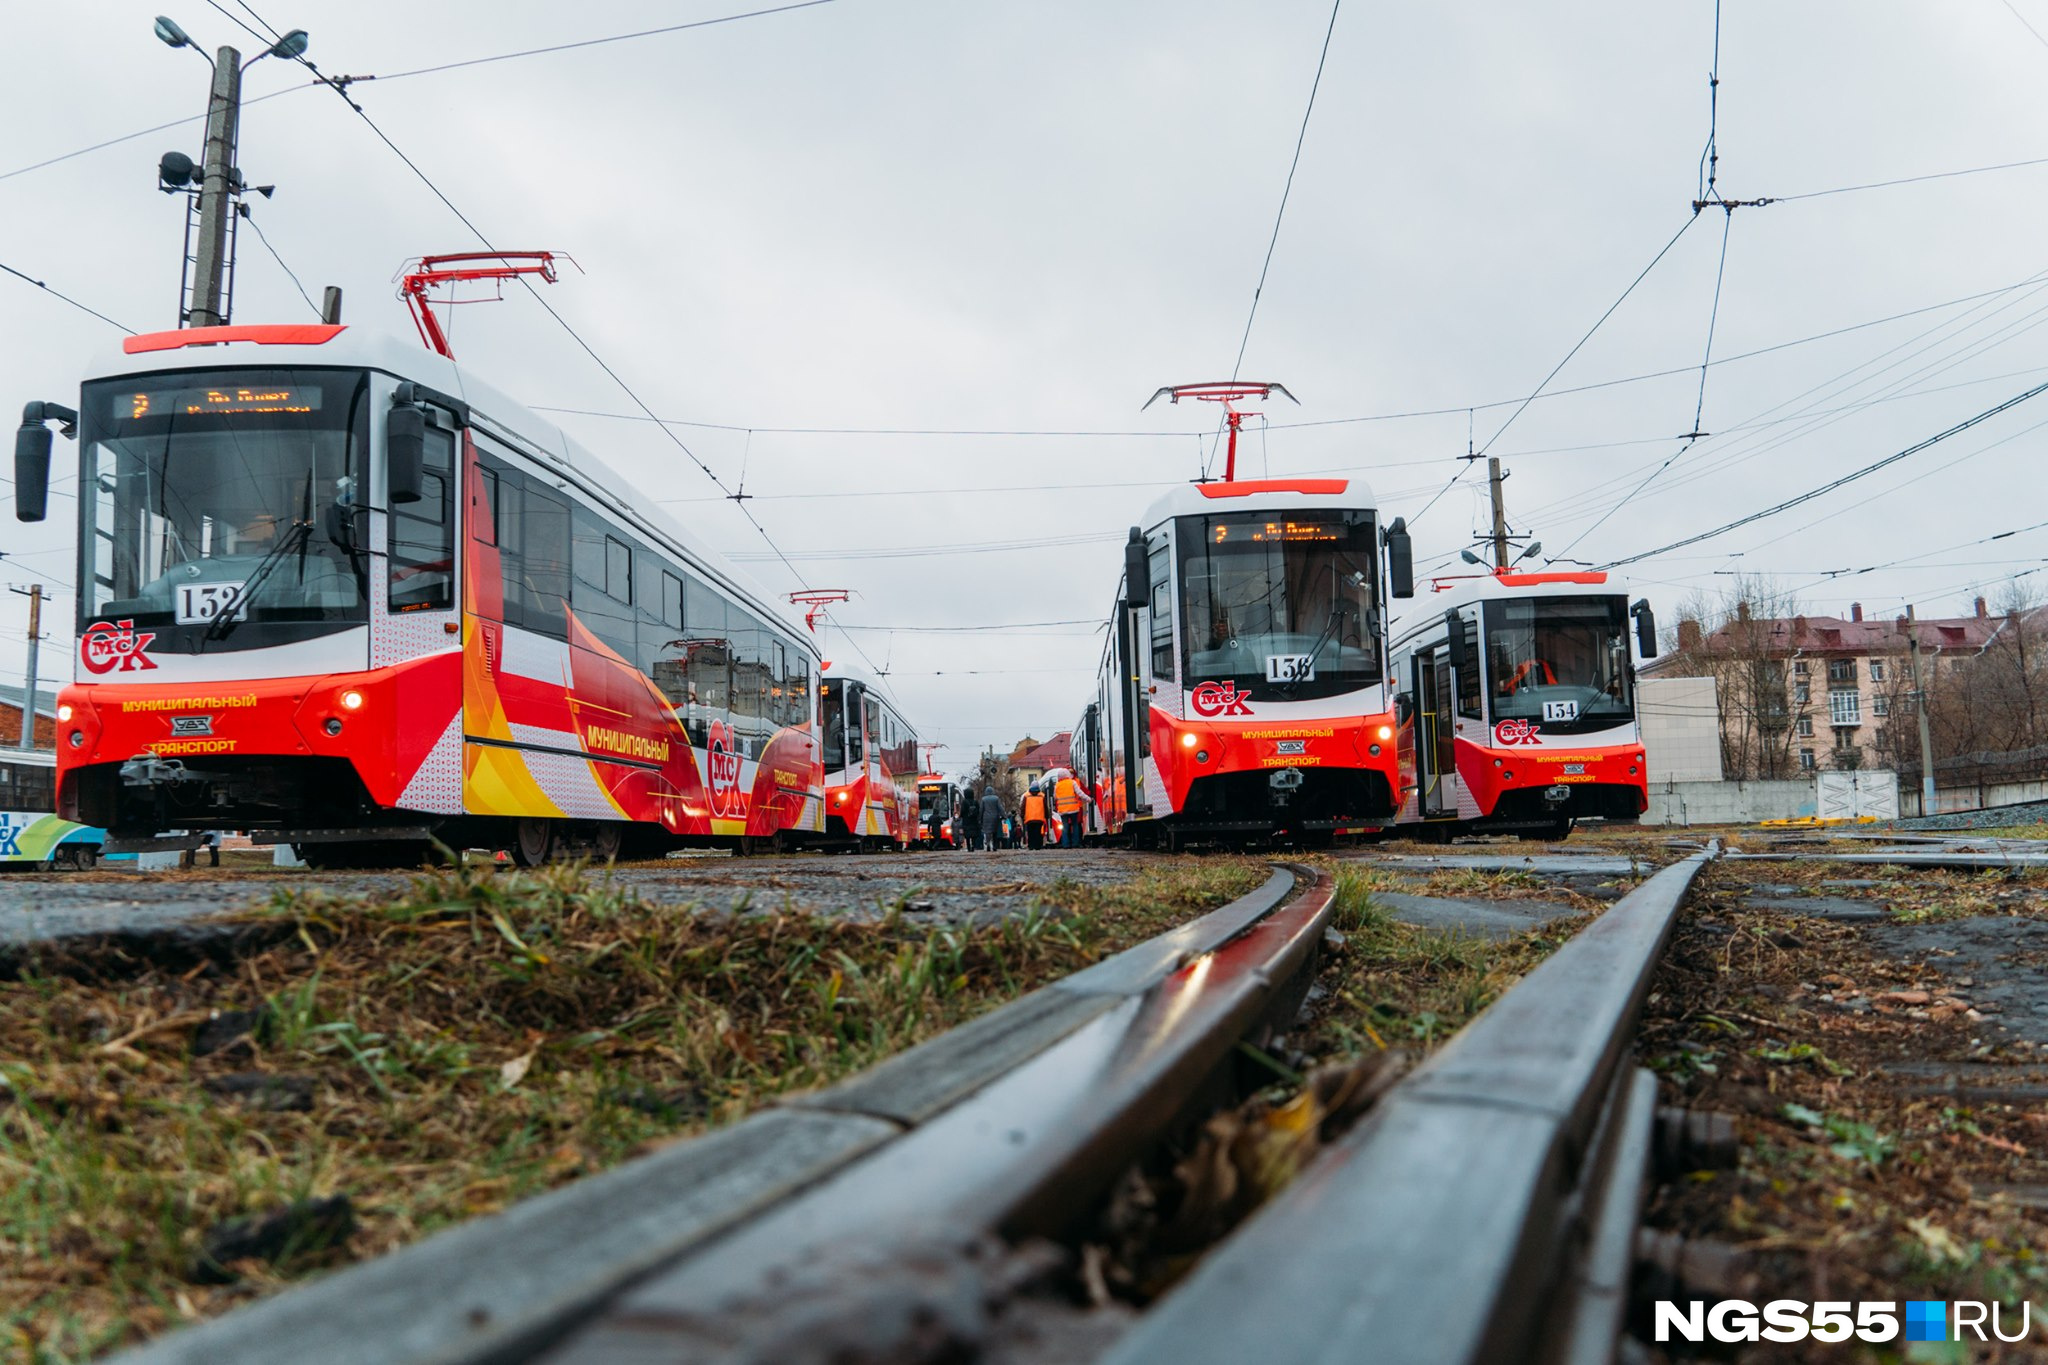 Вот такие трамваи поступили в Омск в ноябре 2020 года. Это вагоны 71–407 от «Уралтрансмаша». Всего Омску закупили 24 новых трамвая. Такая масштабная закупка была впервые за 29 лет